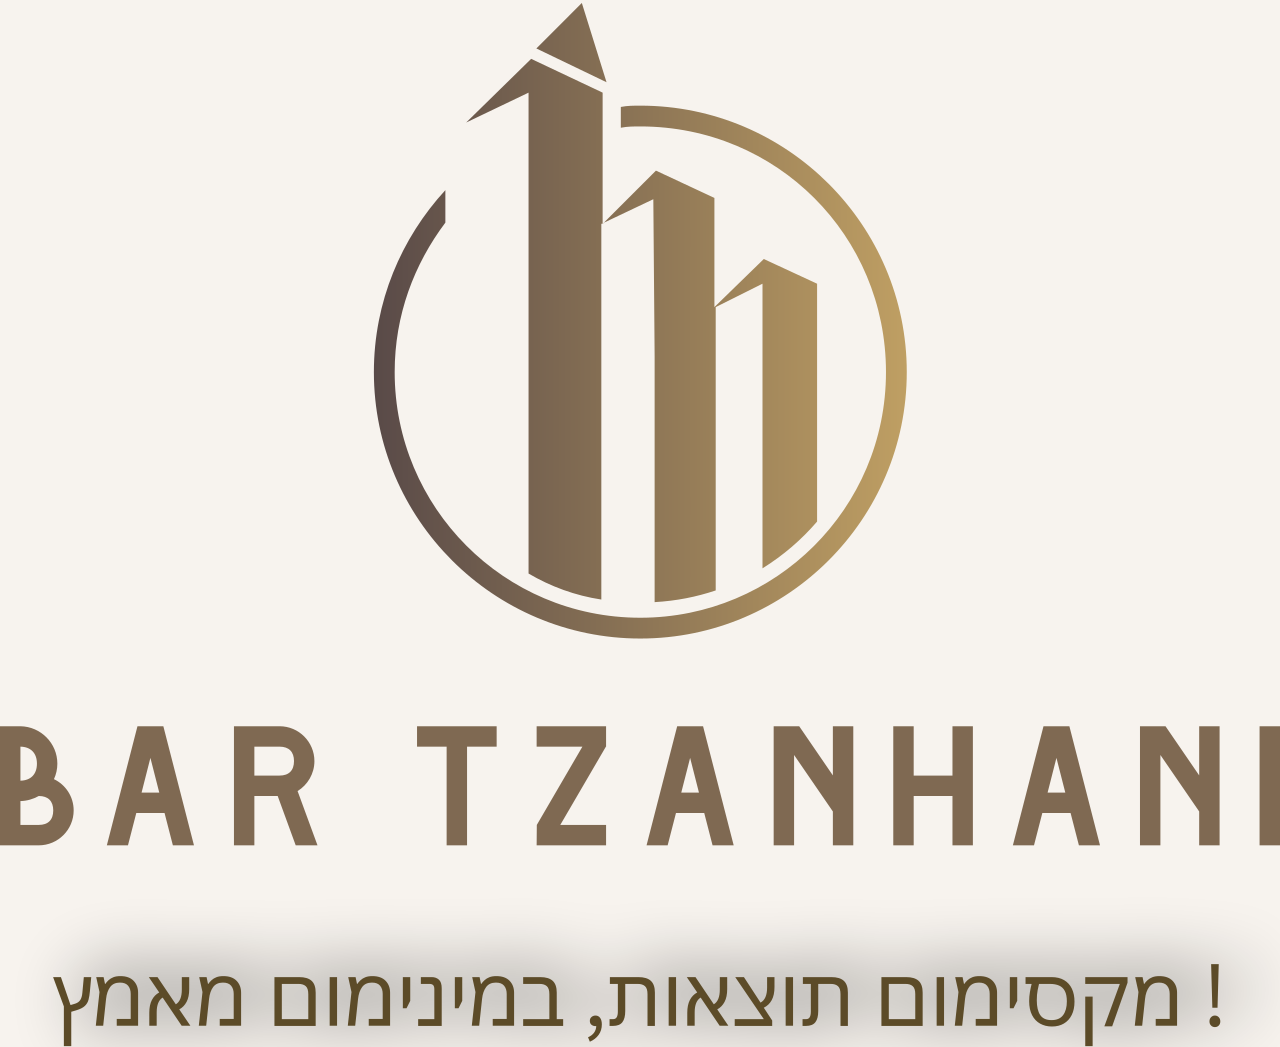 BAR TZANHANI's logo